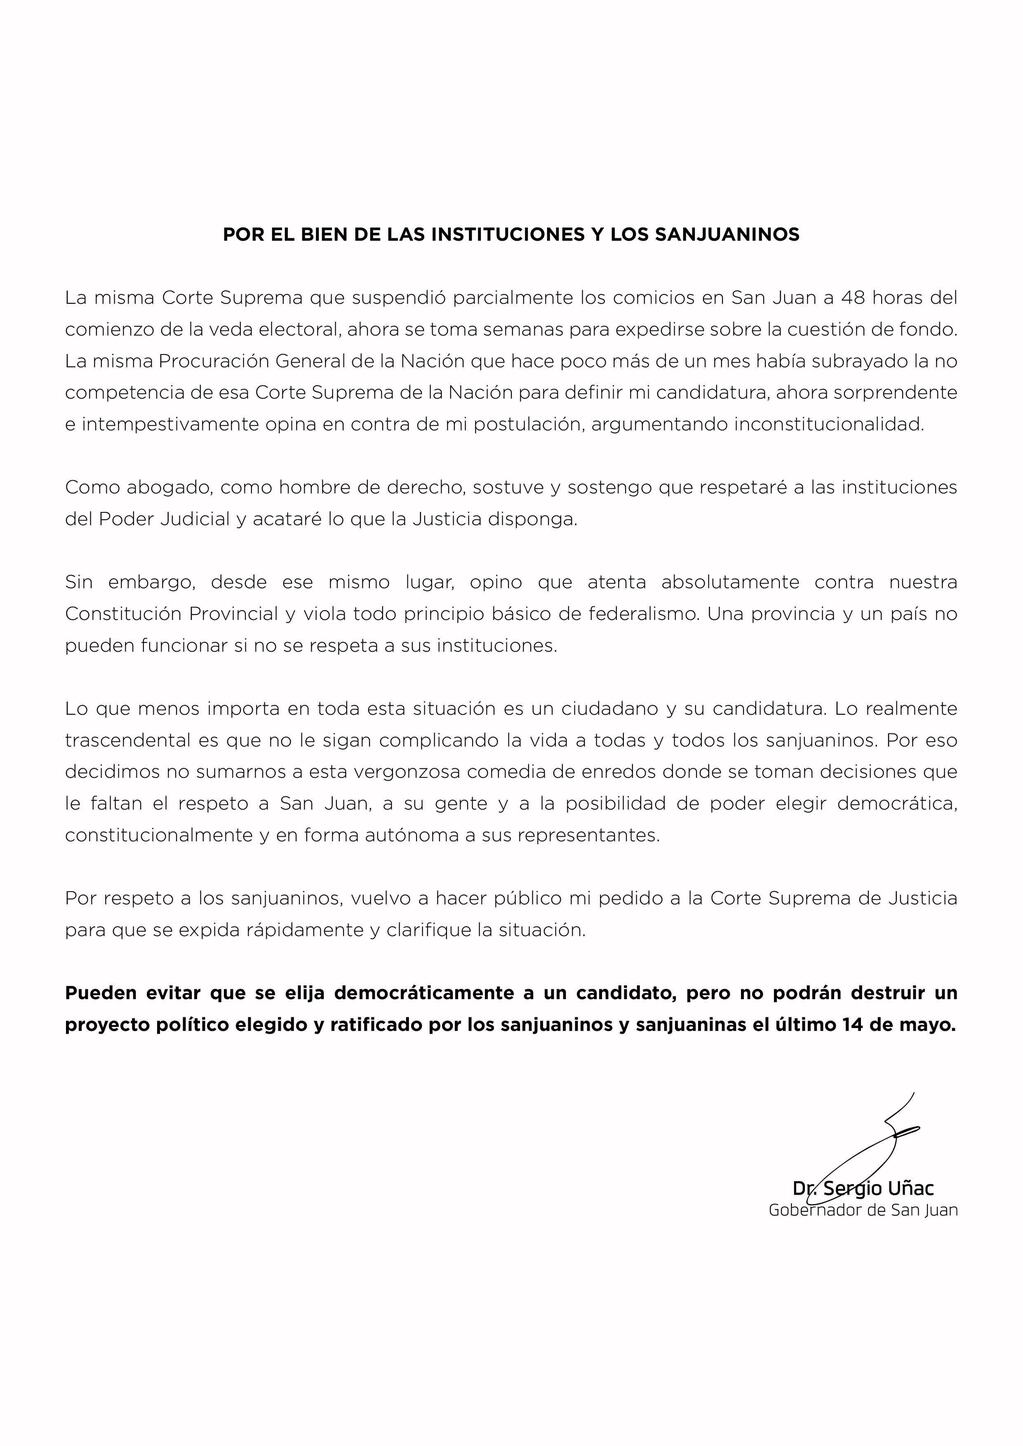 El comunicado oficial de Sergio Uñac.